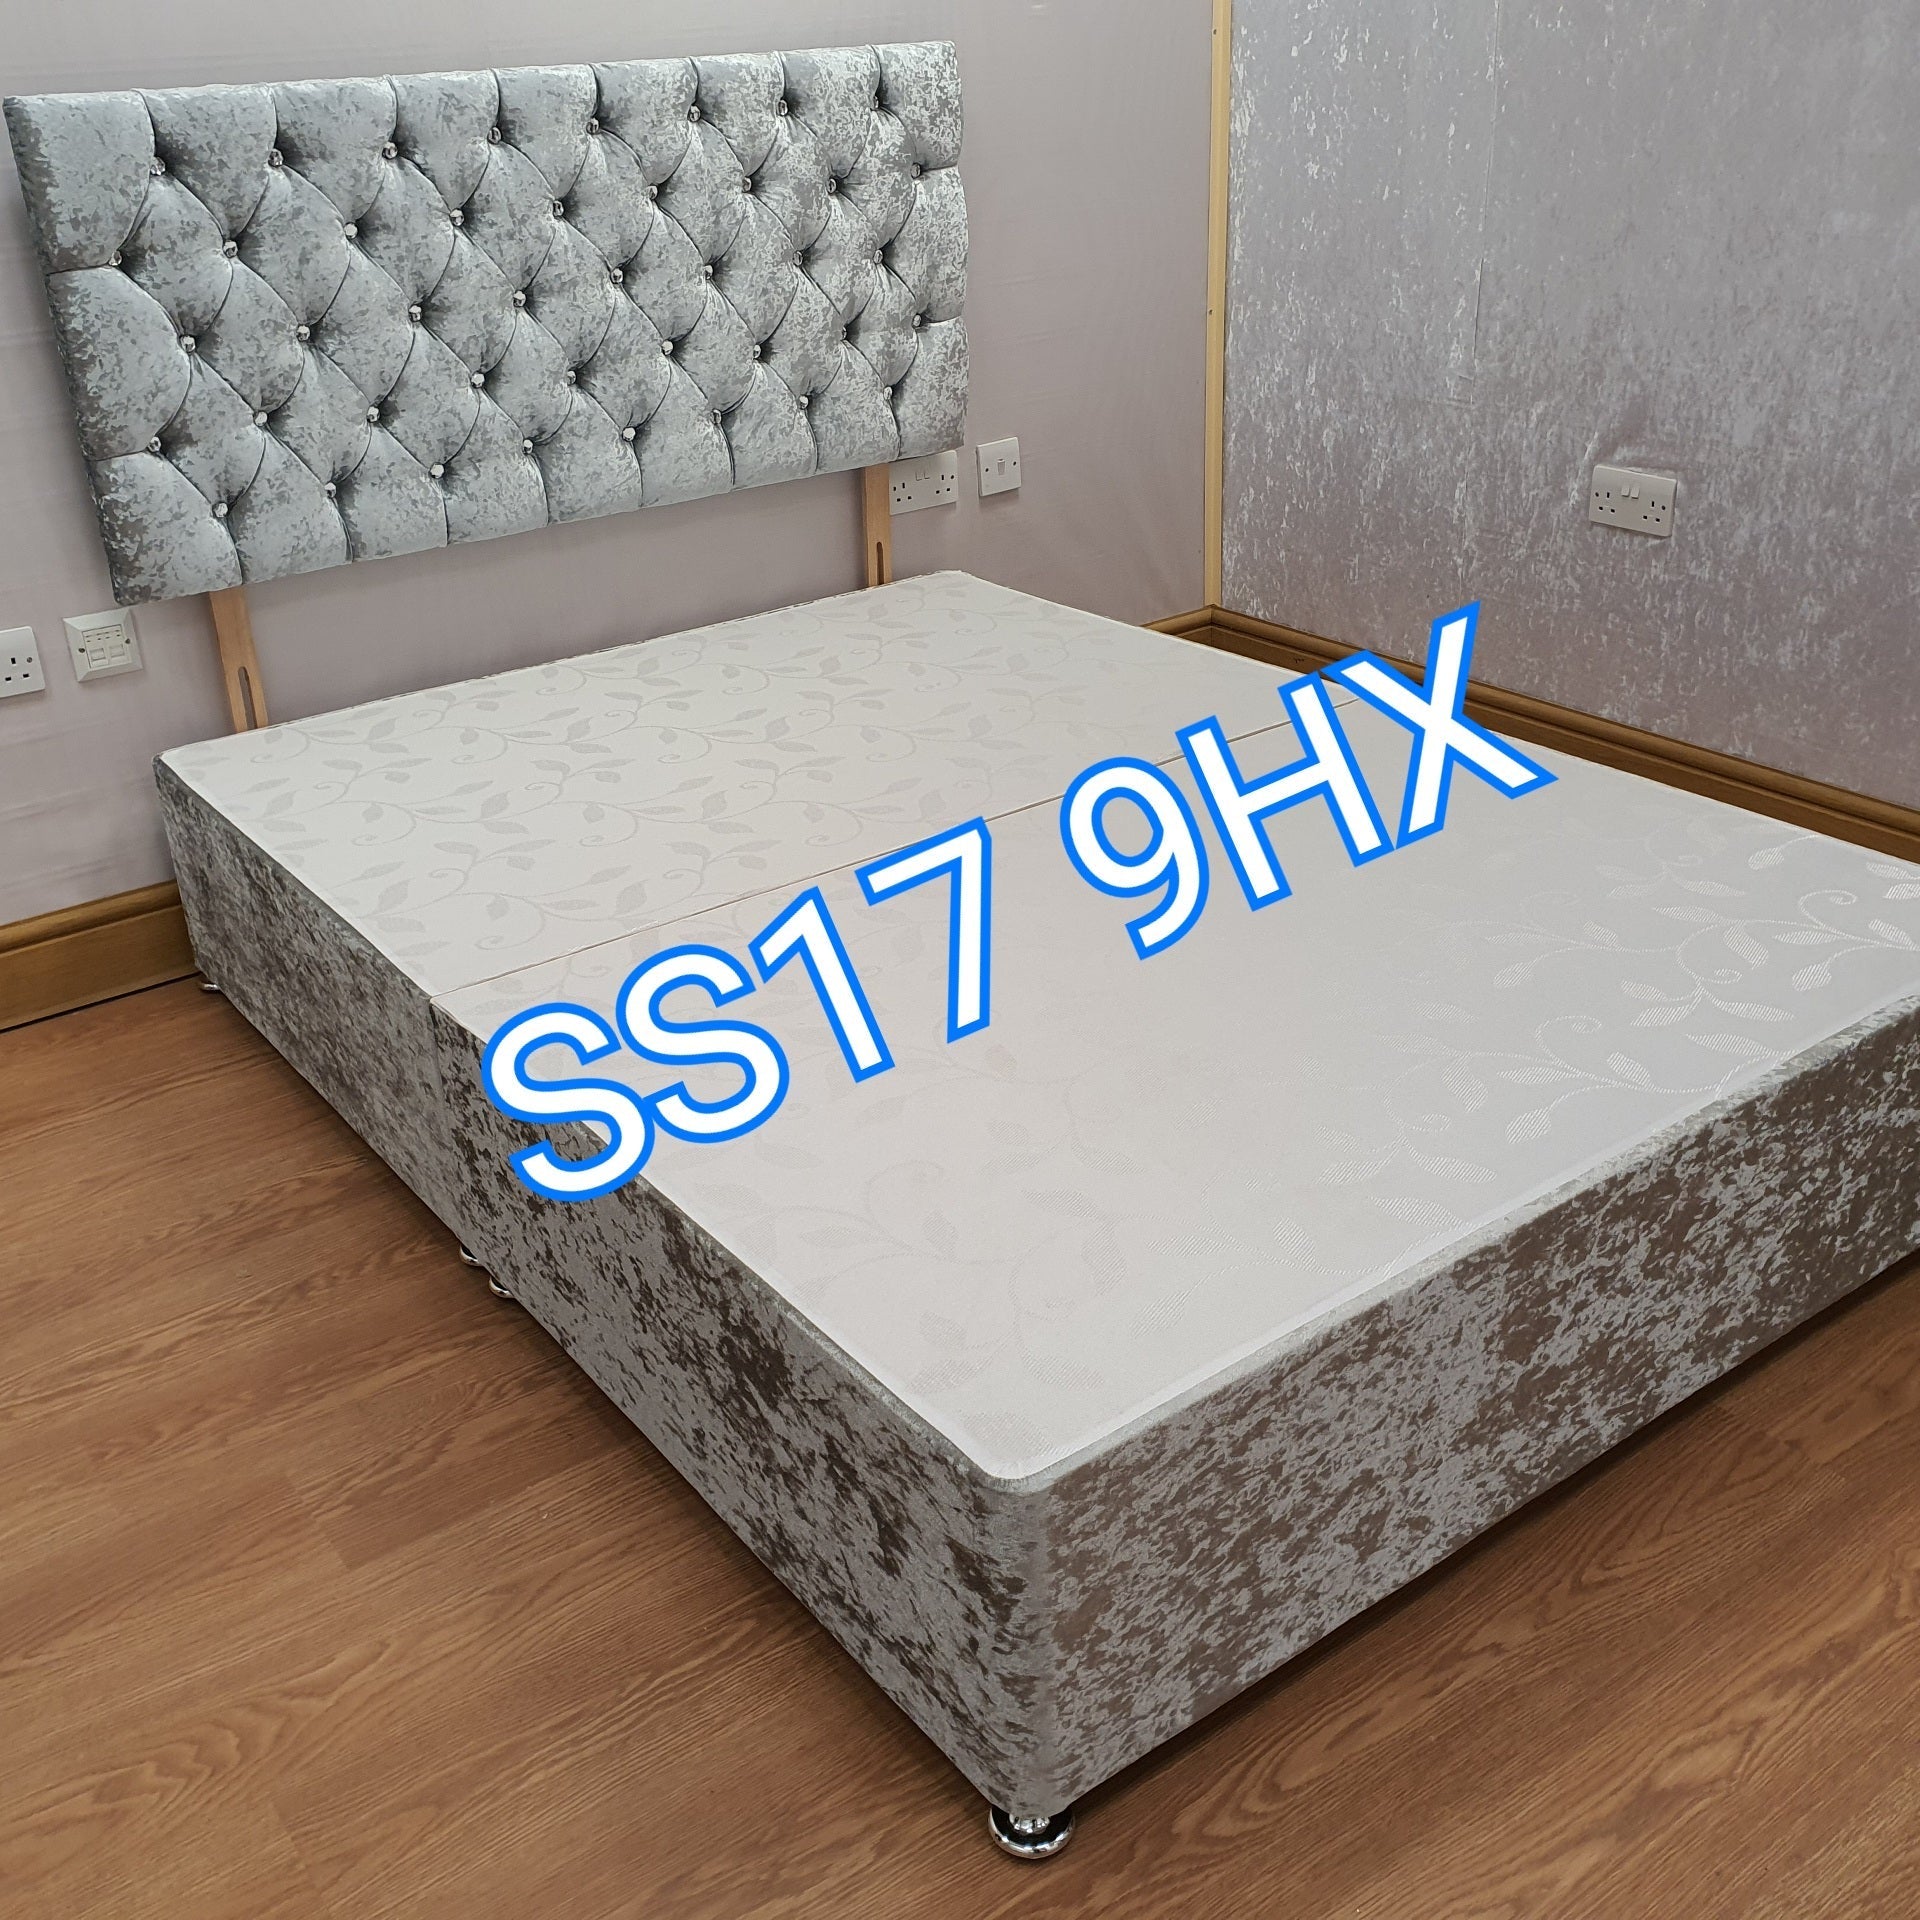 King size beds - Crushed velvet divan bed